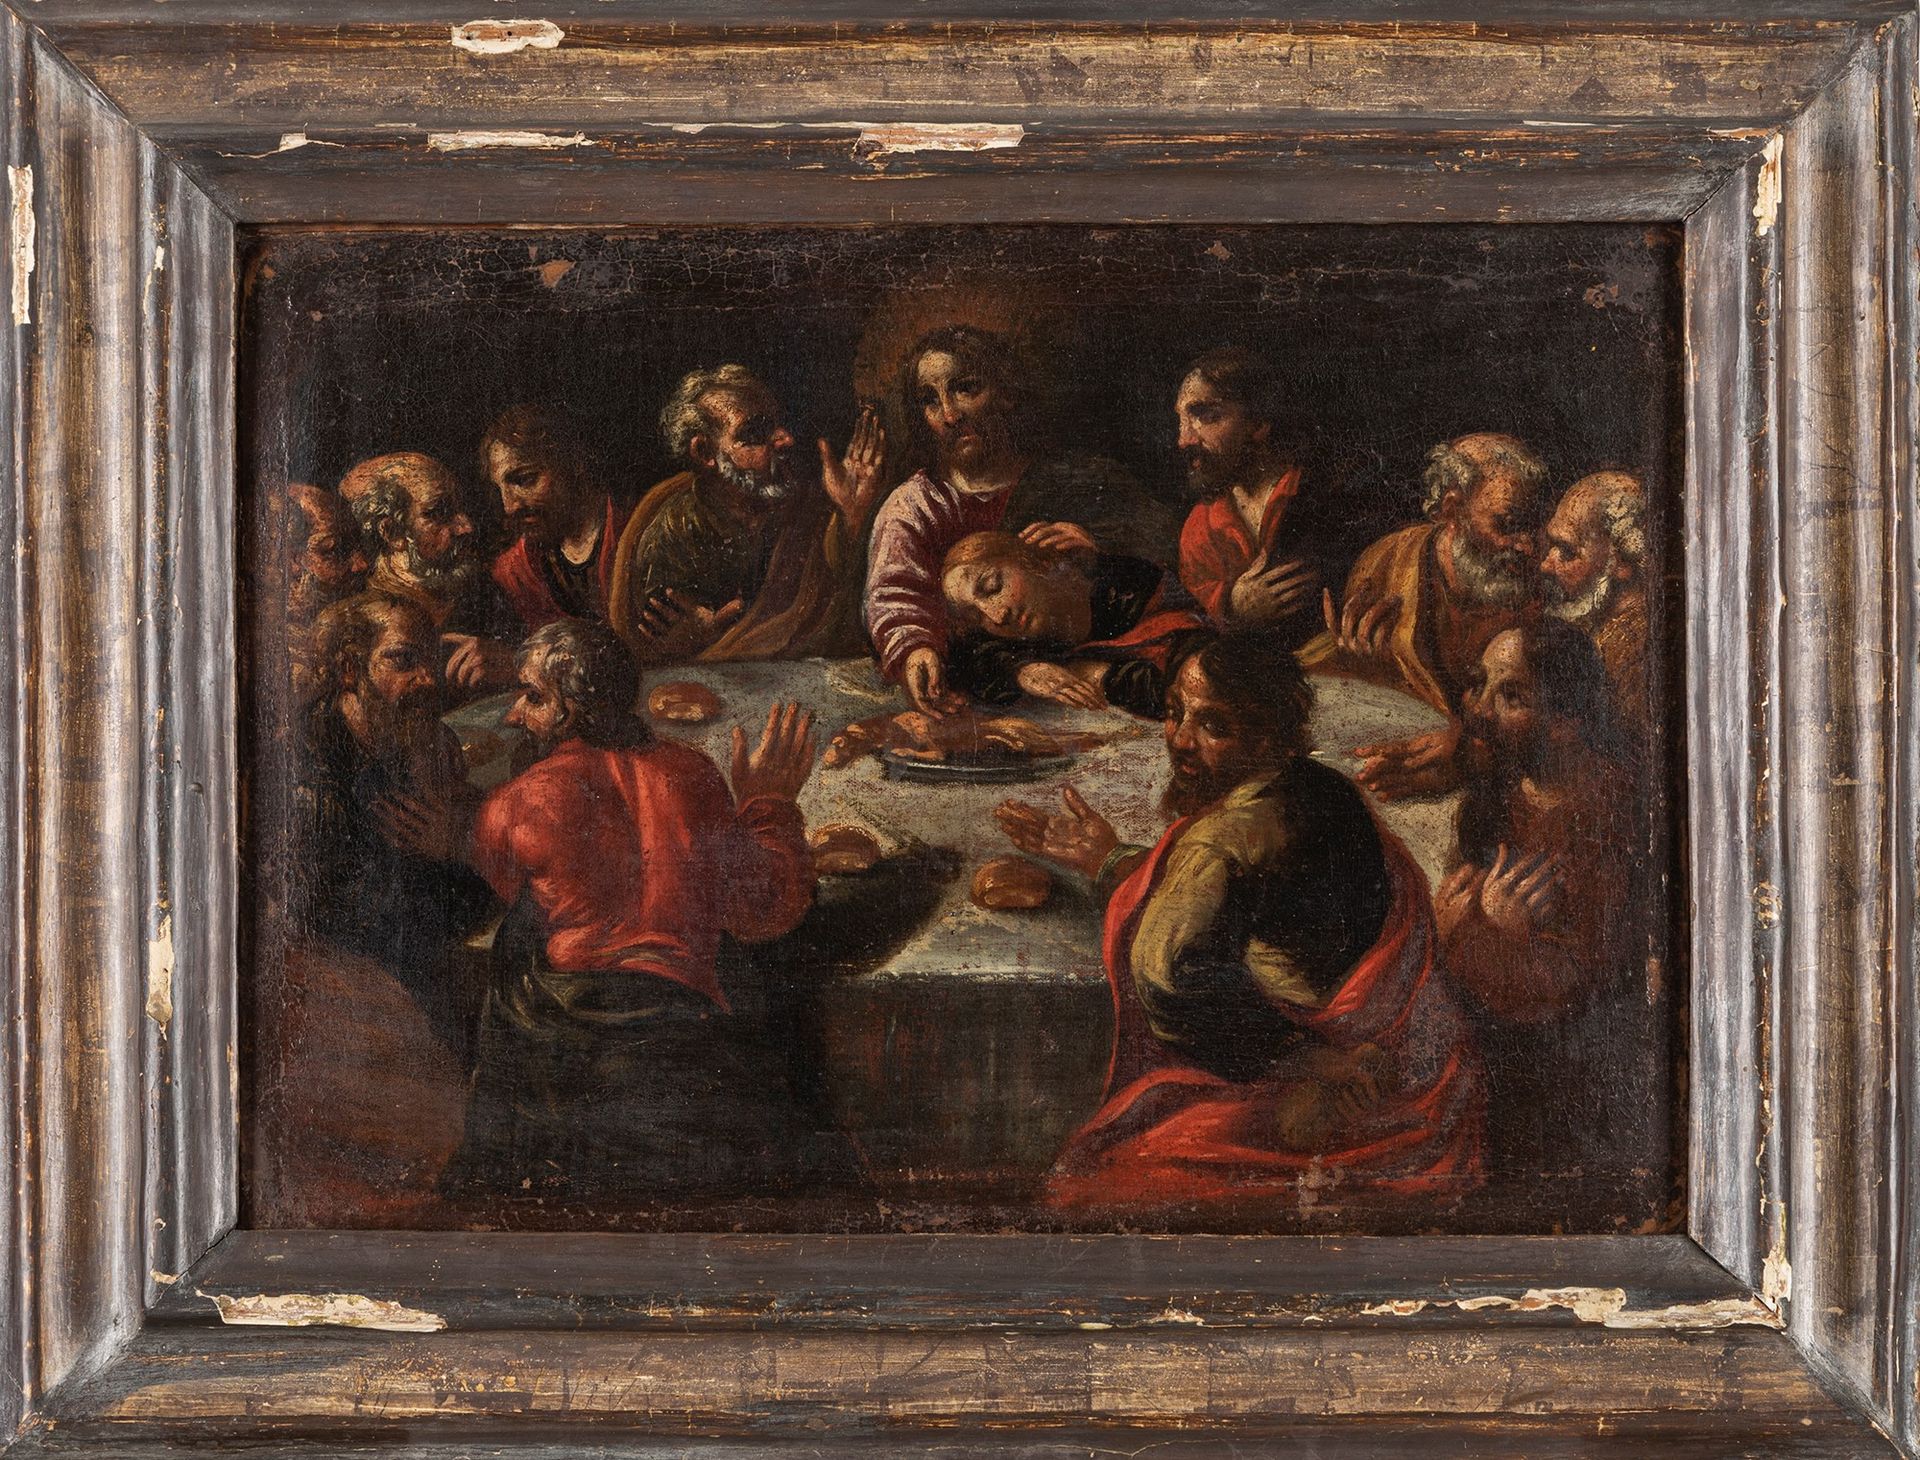 Scuola dell'Italia settentrionale, secolo XVII 最后的晚餐

布面油画
31 x 43 cm